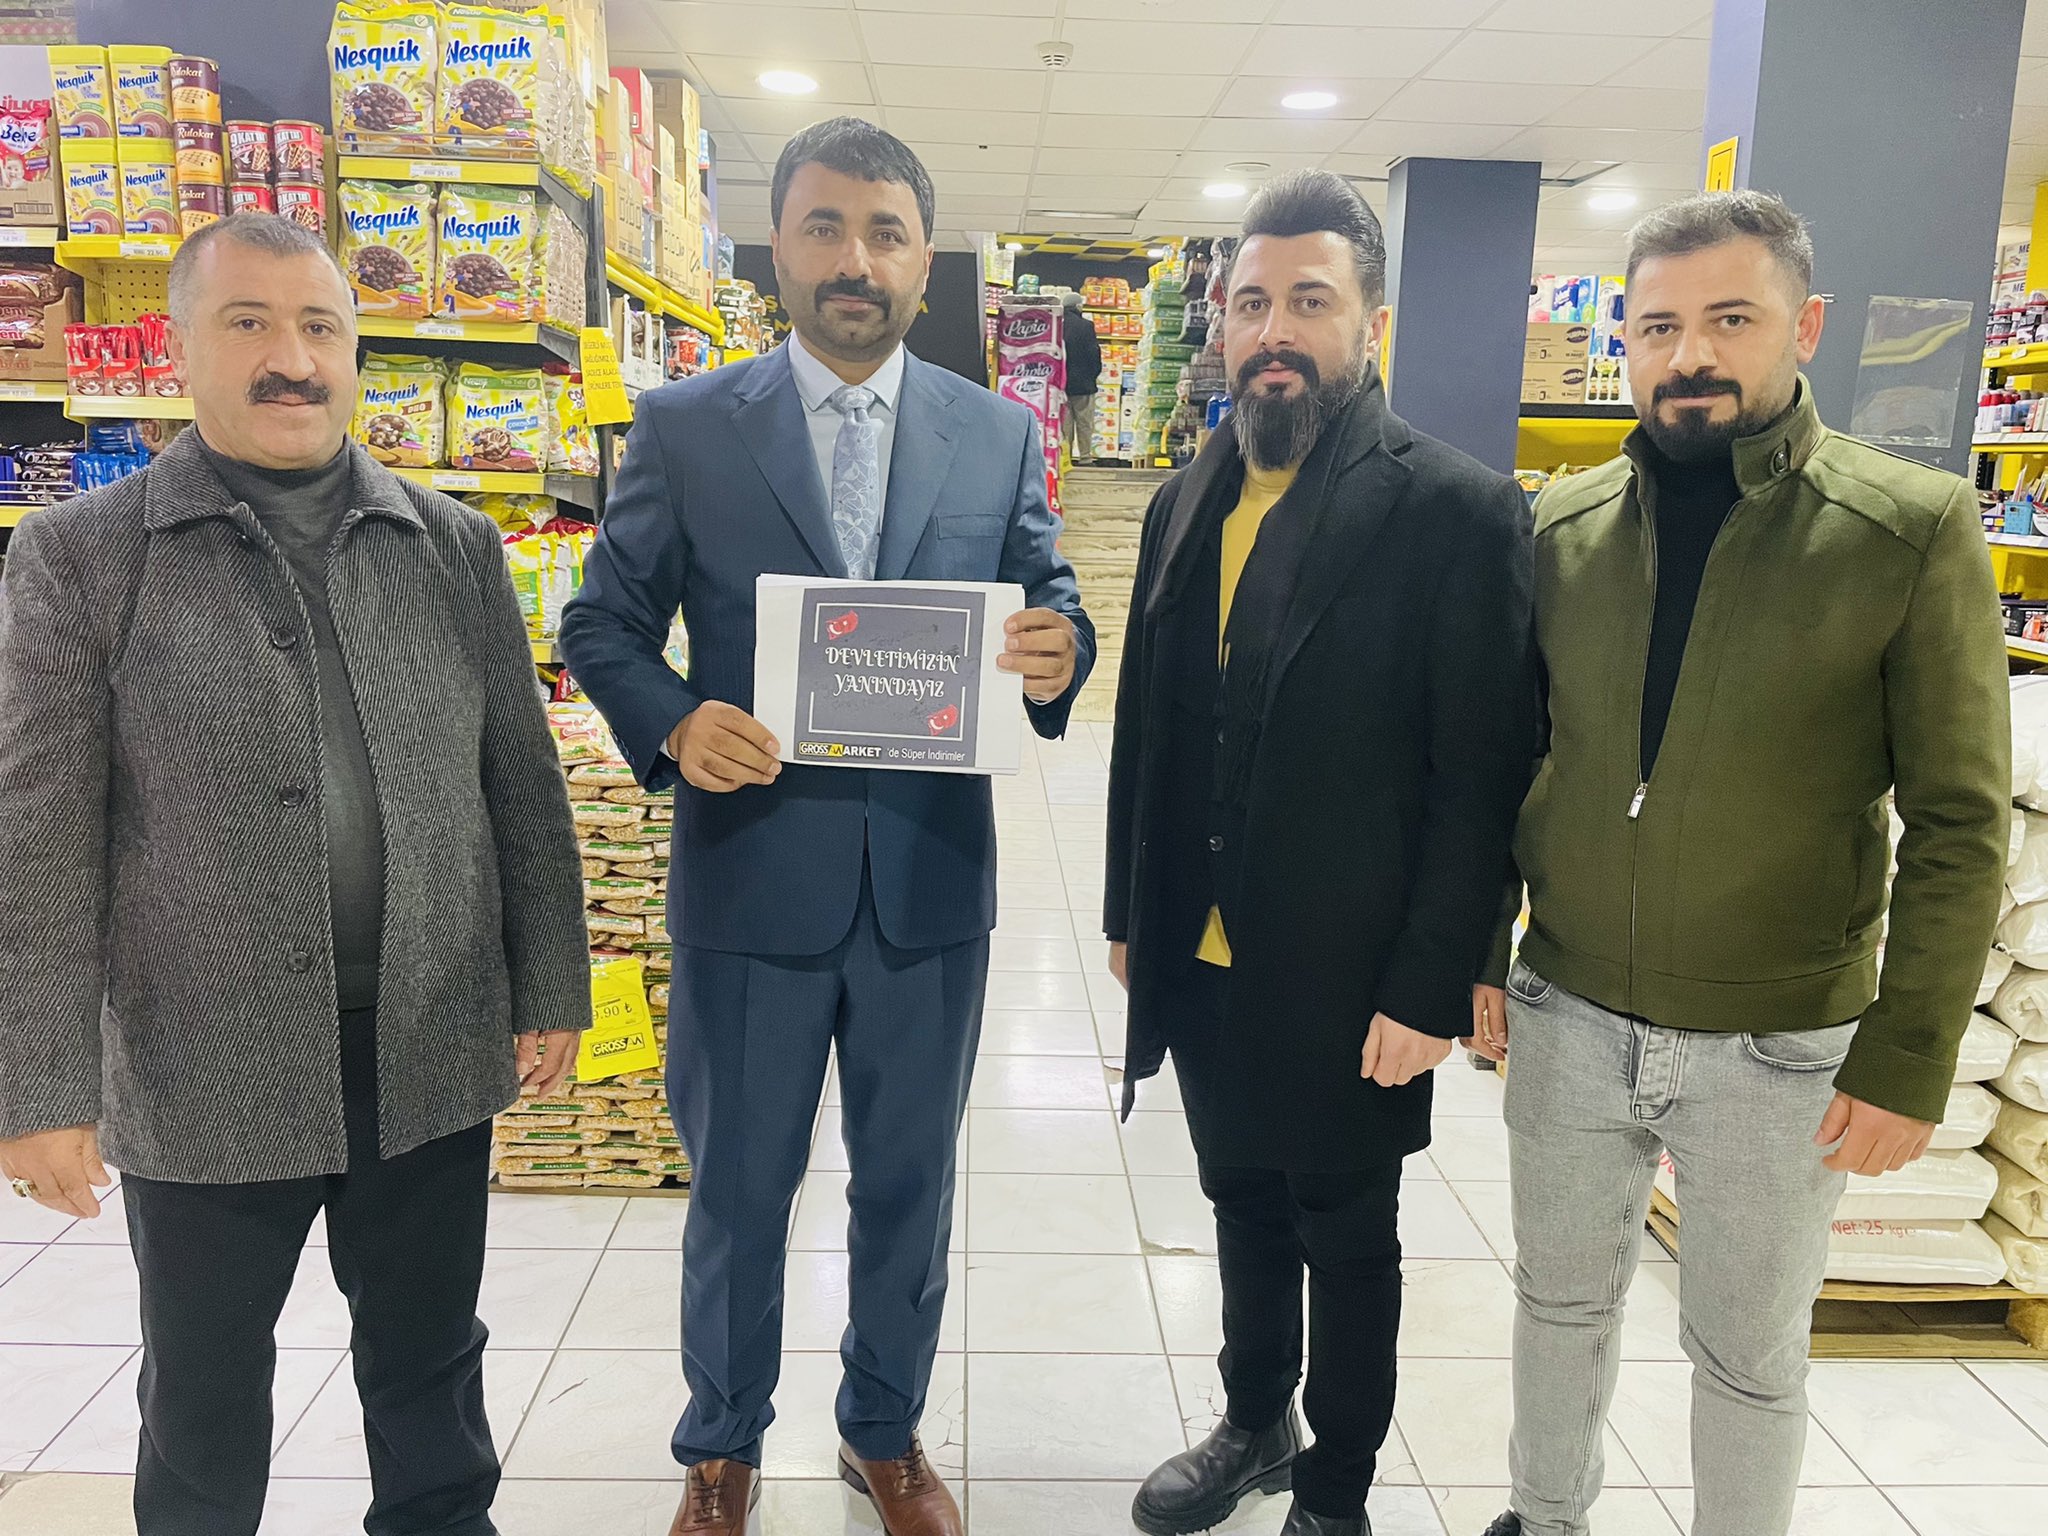 MHP Malatya İl Başkanı Mesut Samanlı, MHP Lideri Dr. Devlet Bahçeli’nin çağrısı üzerine ürünlerinde indirim yapan esnaf ve yerel marketleri ziyaret ederek teşekkür etti, birlikte indirim etiketlerini astılar.